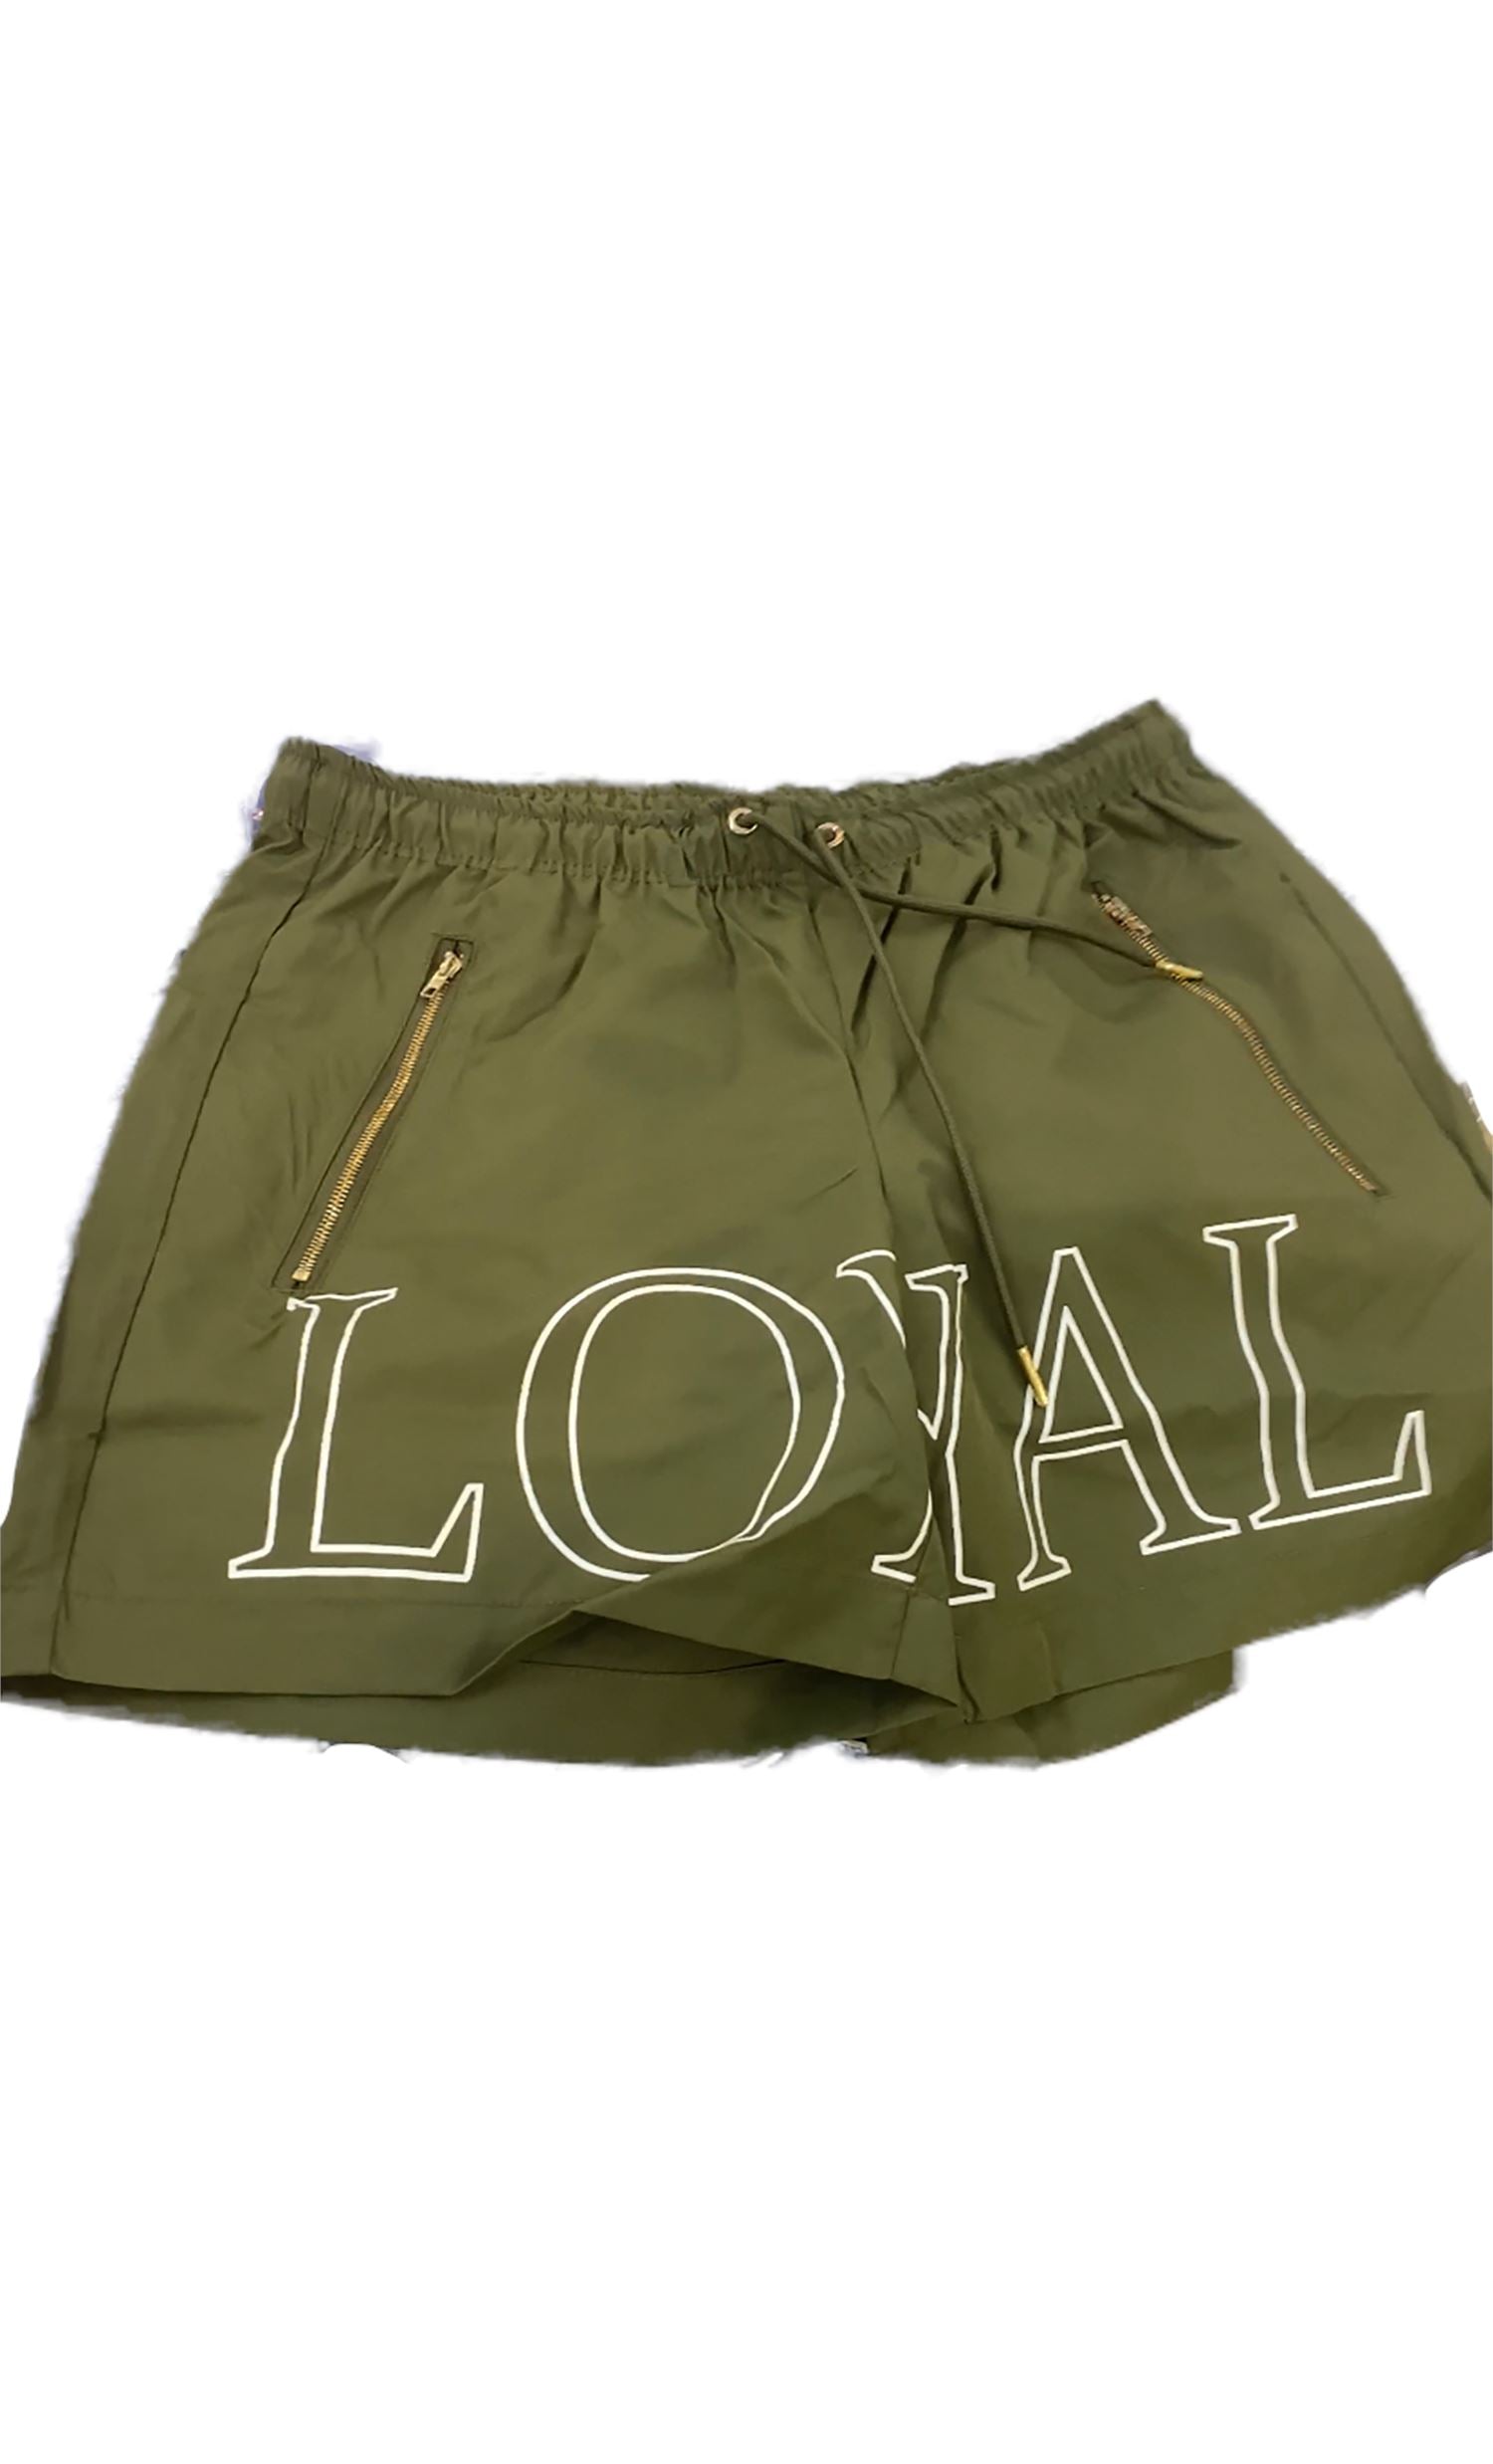 Loyal Shorts Shorts Forever Loyal Apparel S OLIVE GREEN 